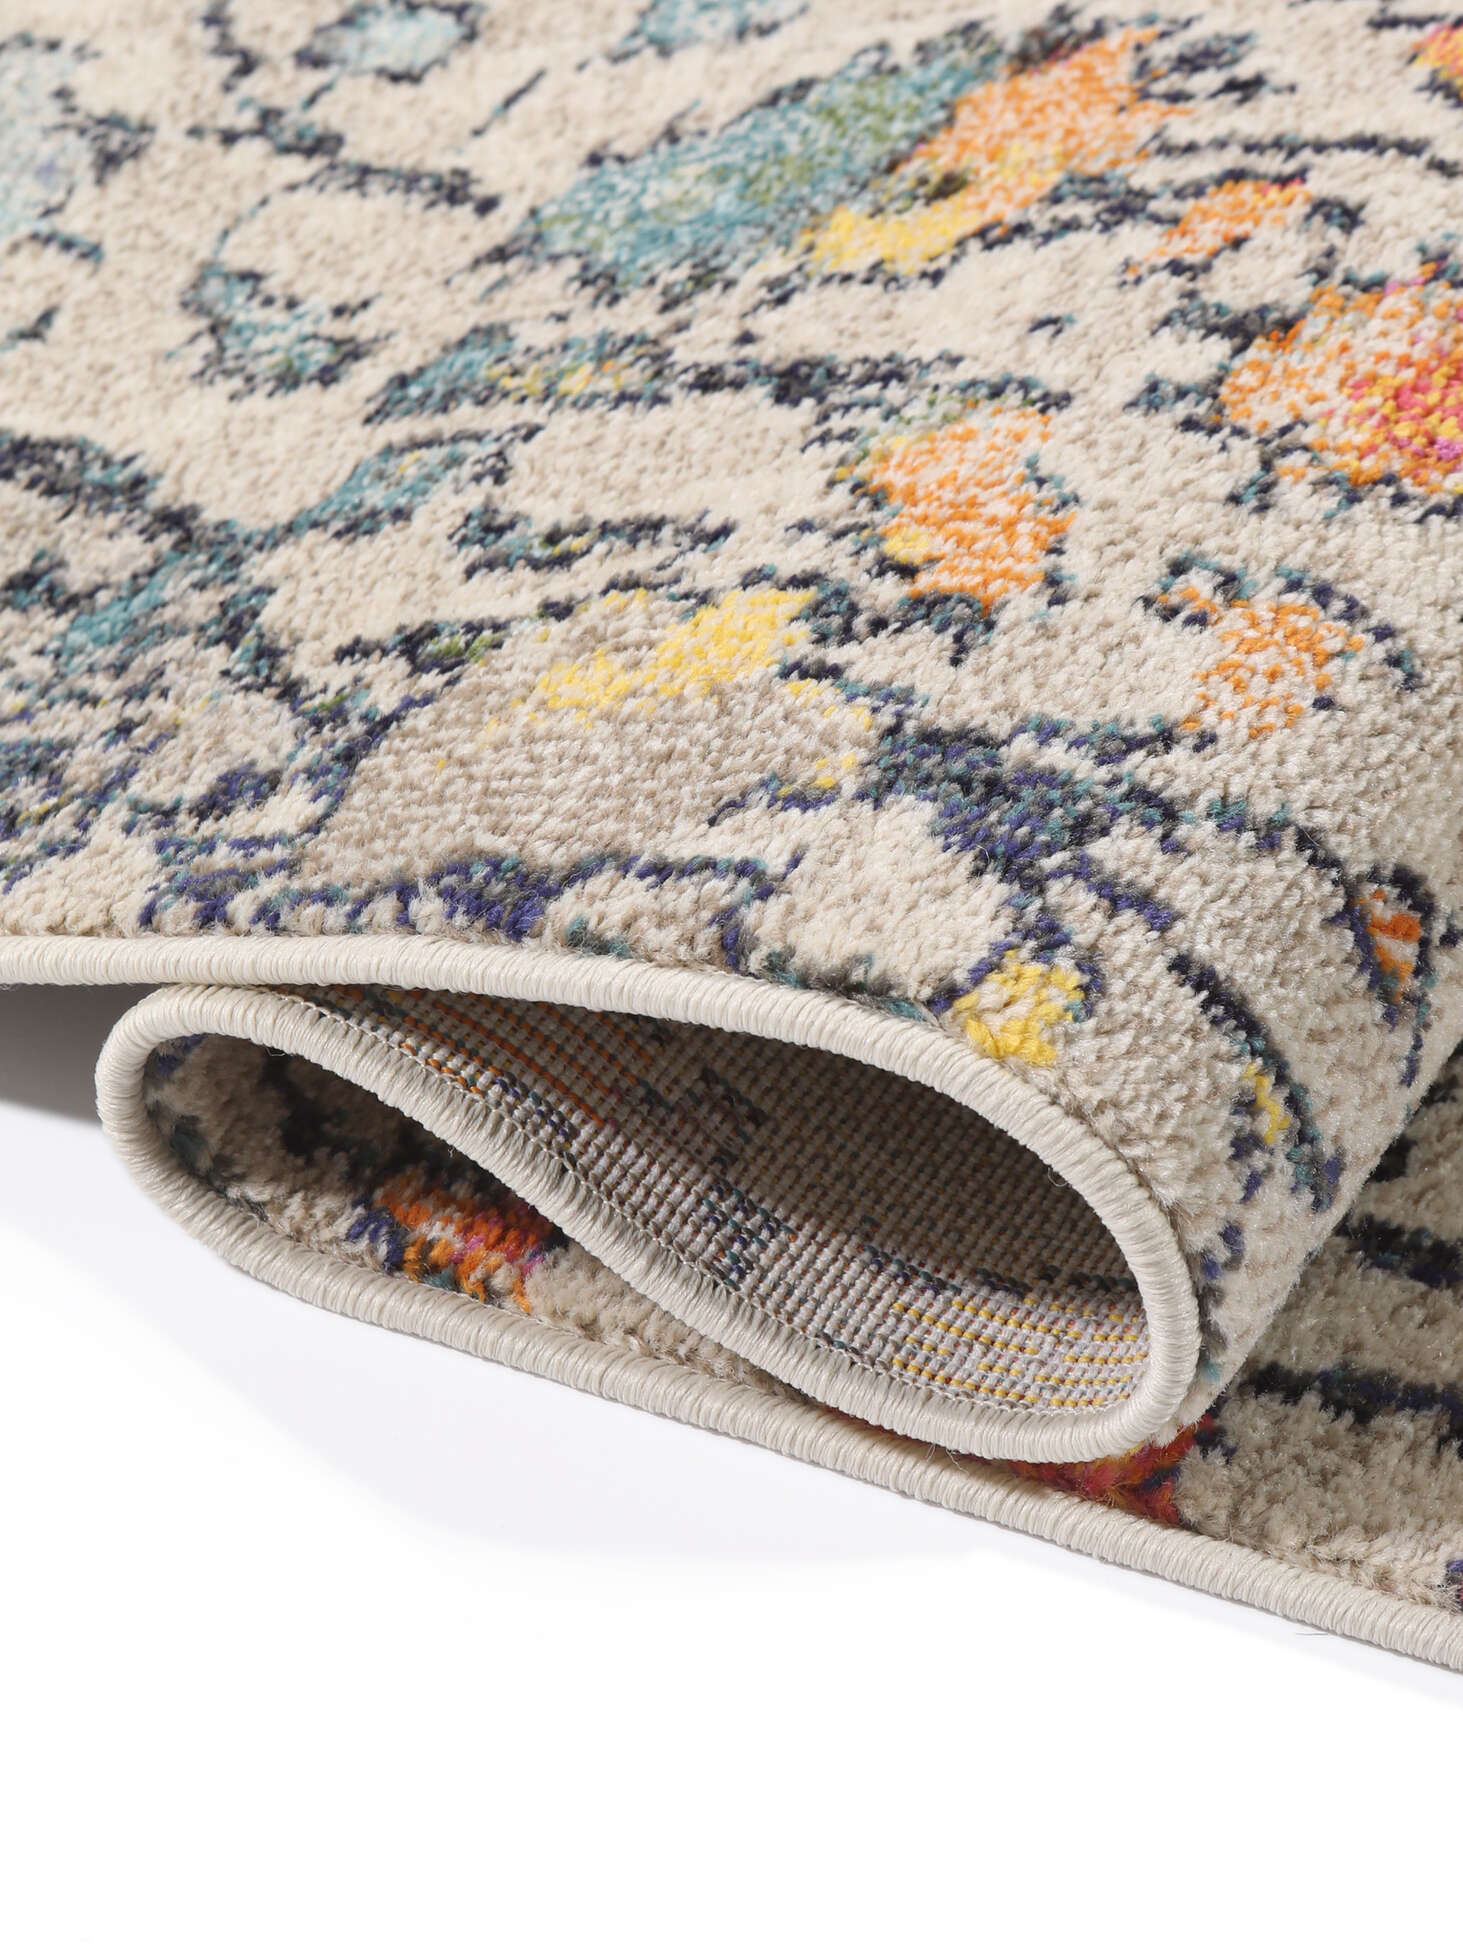 La mejor selección de alfombras de 300 x 400 en línea I Trendcarpet